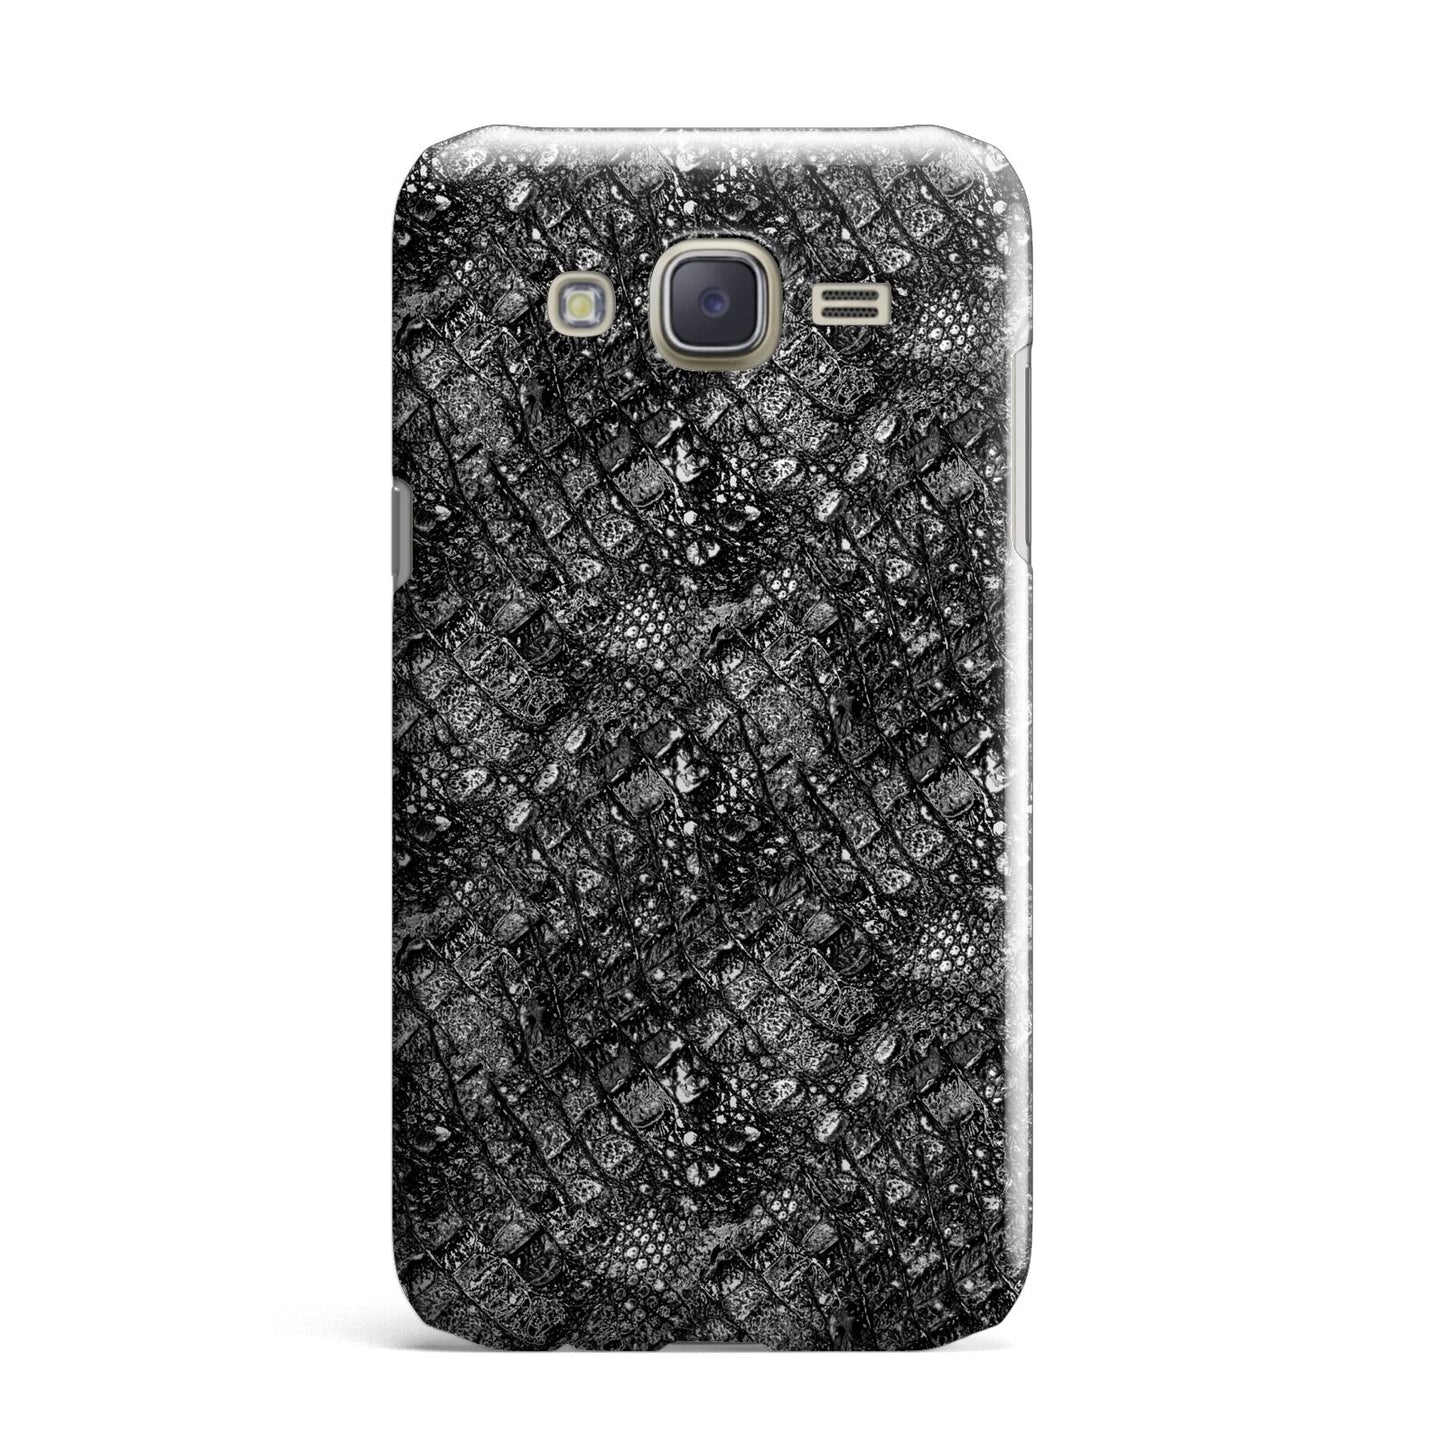 Snakeskin Design Samsung Galaxy J7 Case